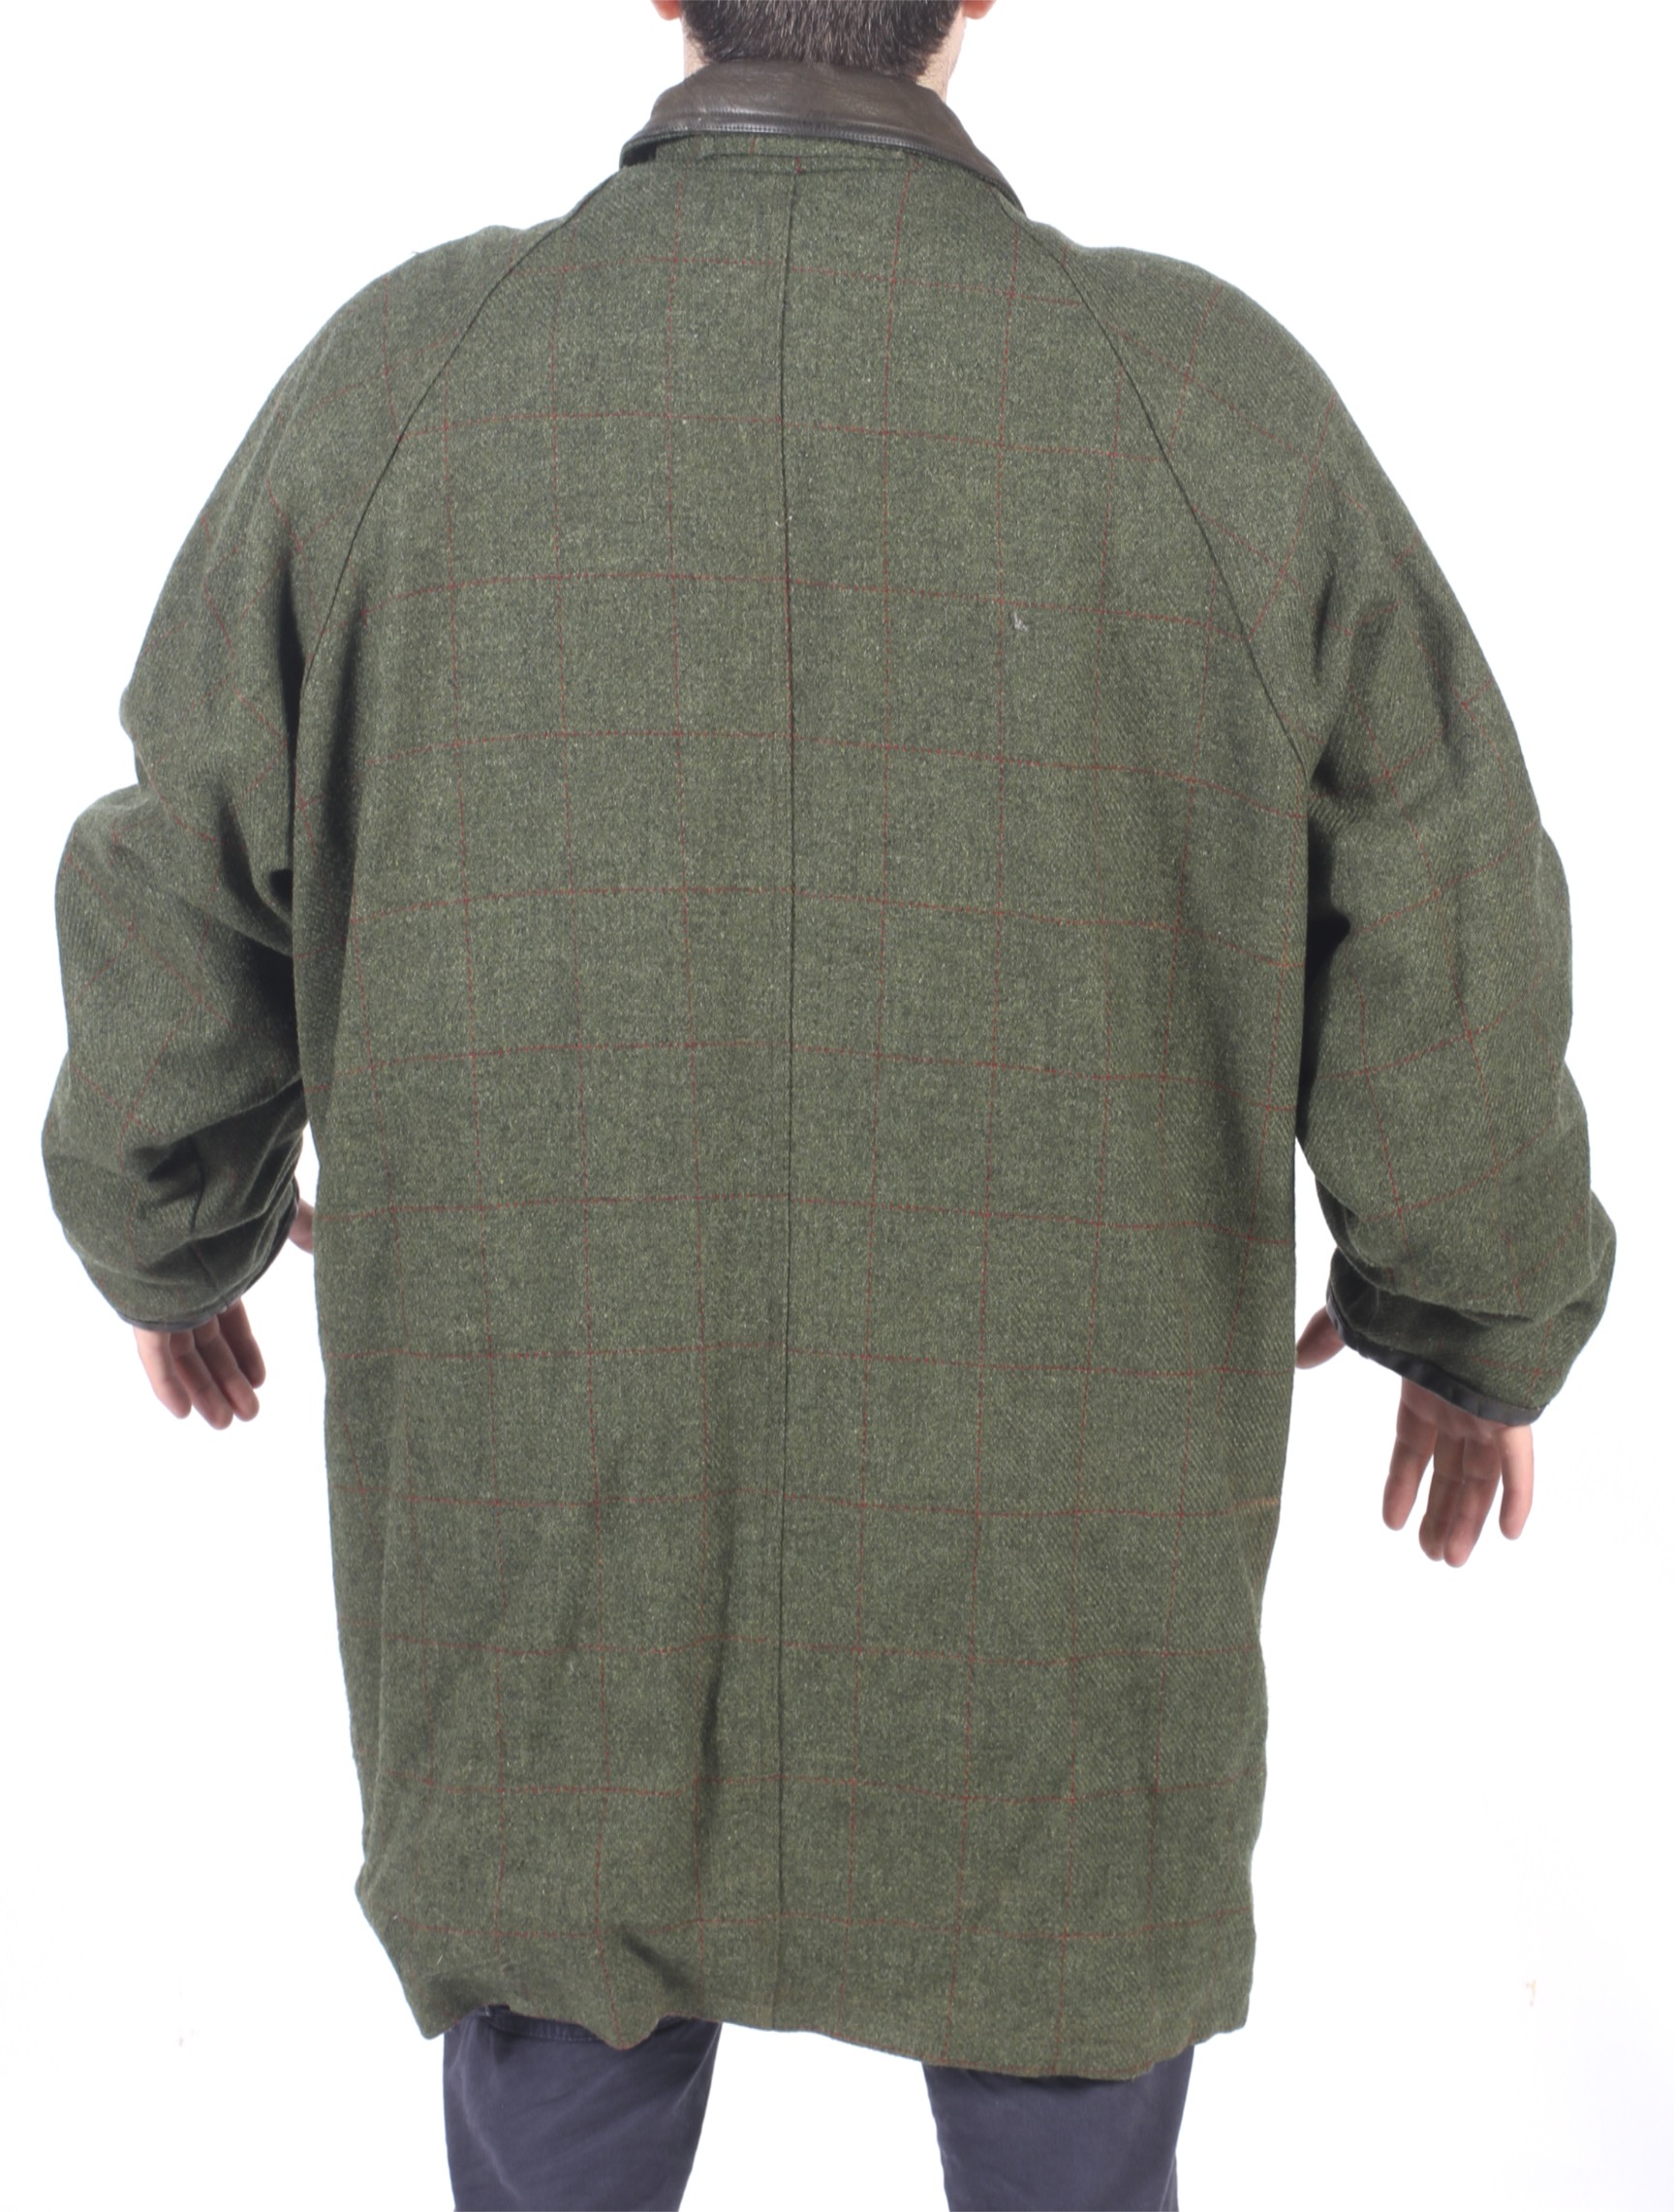 A Hucklecote Dartmore gentleman's shooting jacket. - Image 5 of 6